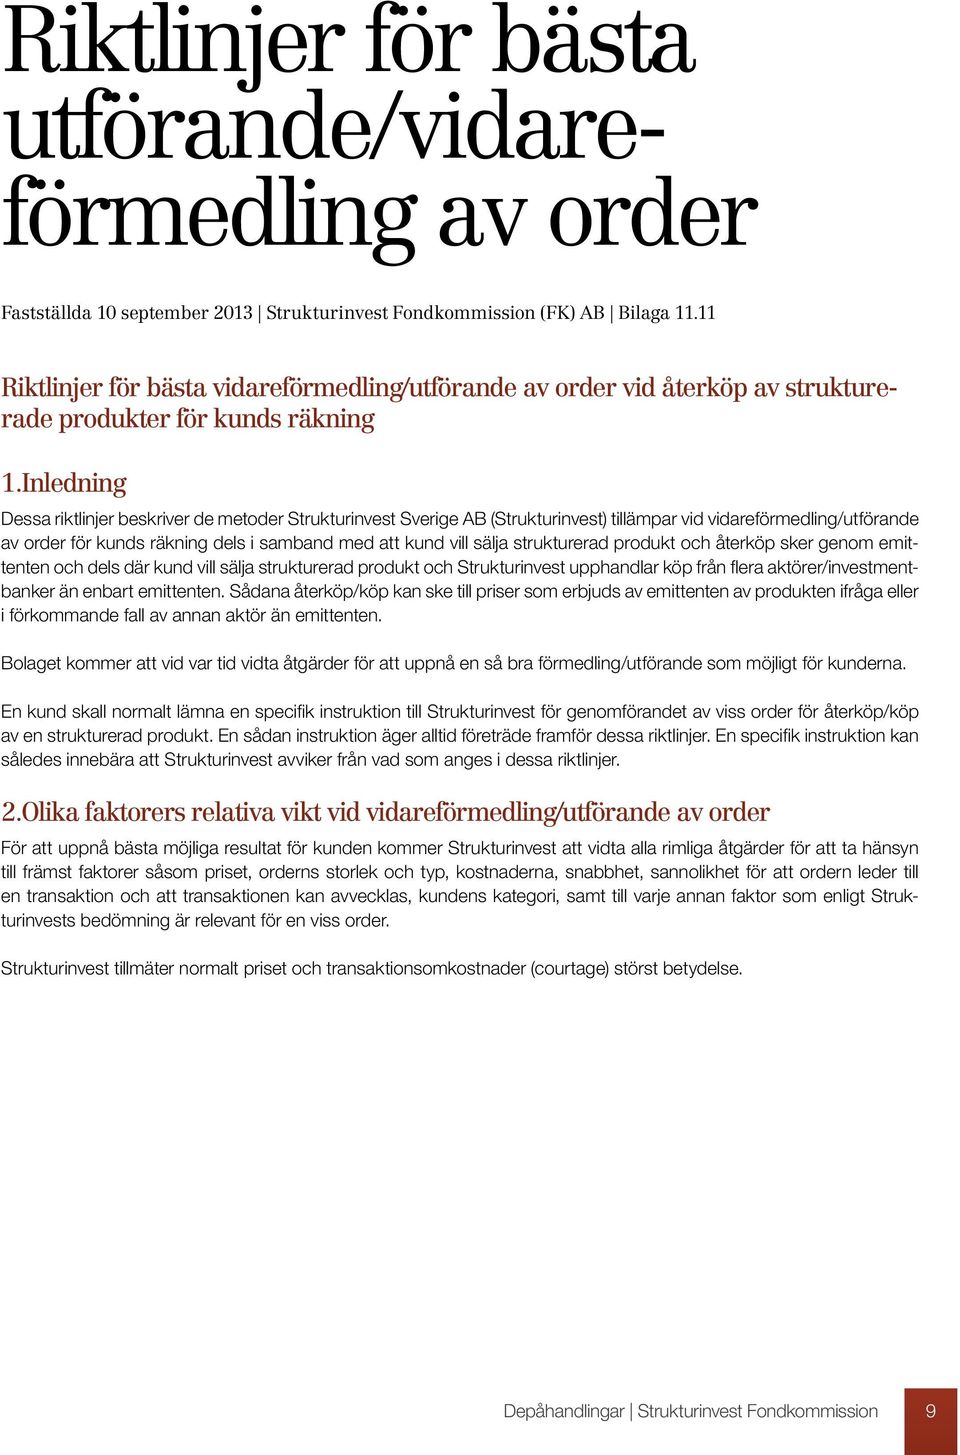 Inledning Dessa riktlinjer beskriver de metoder Strukturinvest Sverige AB (Strukturinvest) tillämpar vid vidareförmedling/utförande av order för kunds räkning dels i samband med att kund vill sälja